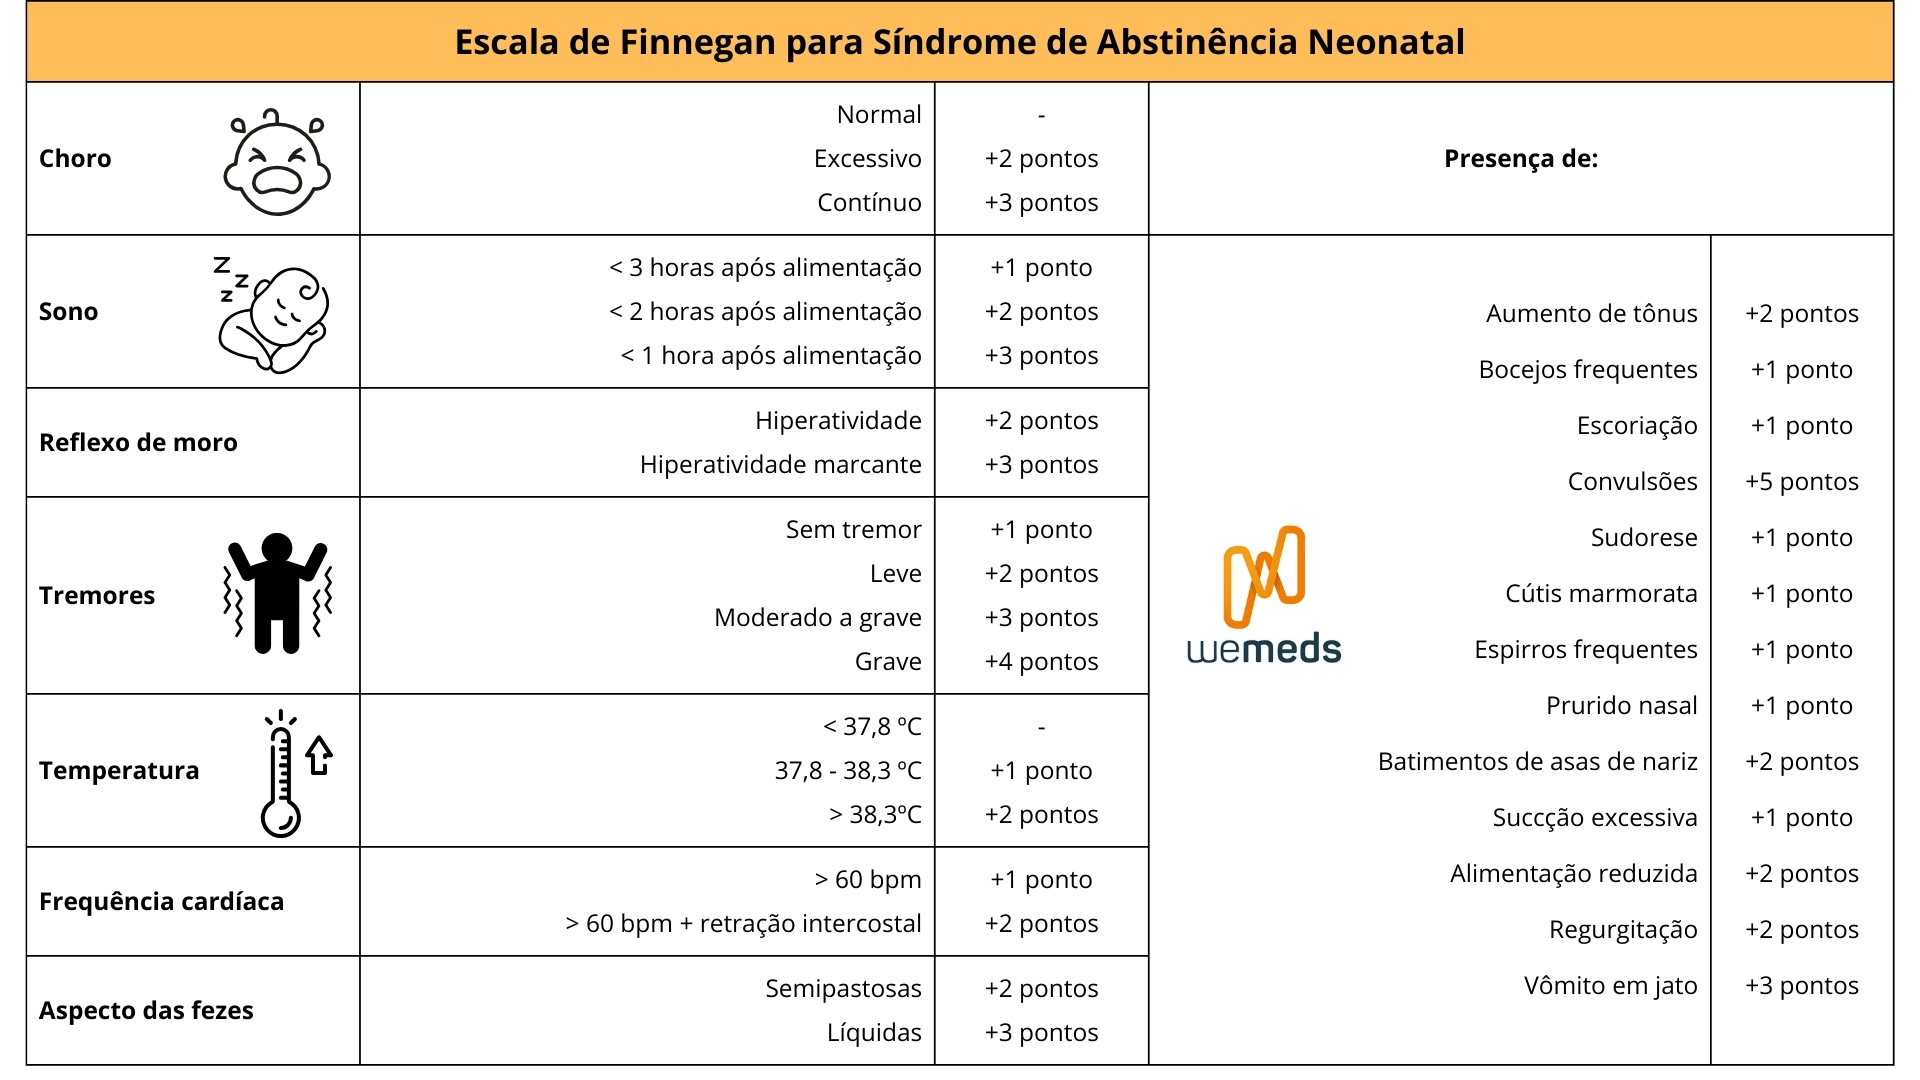 Escala de Finnegan na Síndrome de Abstinência Neonatal